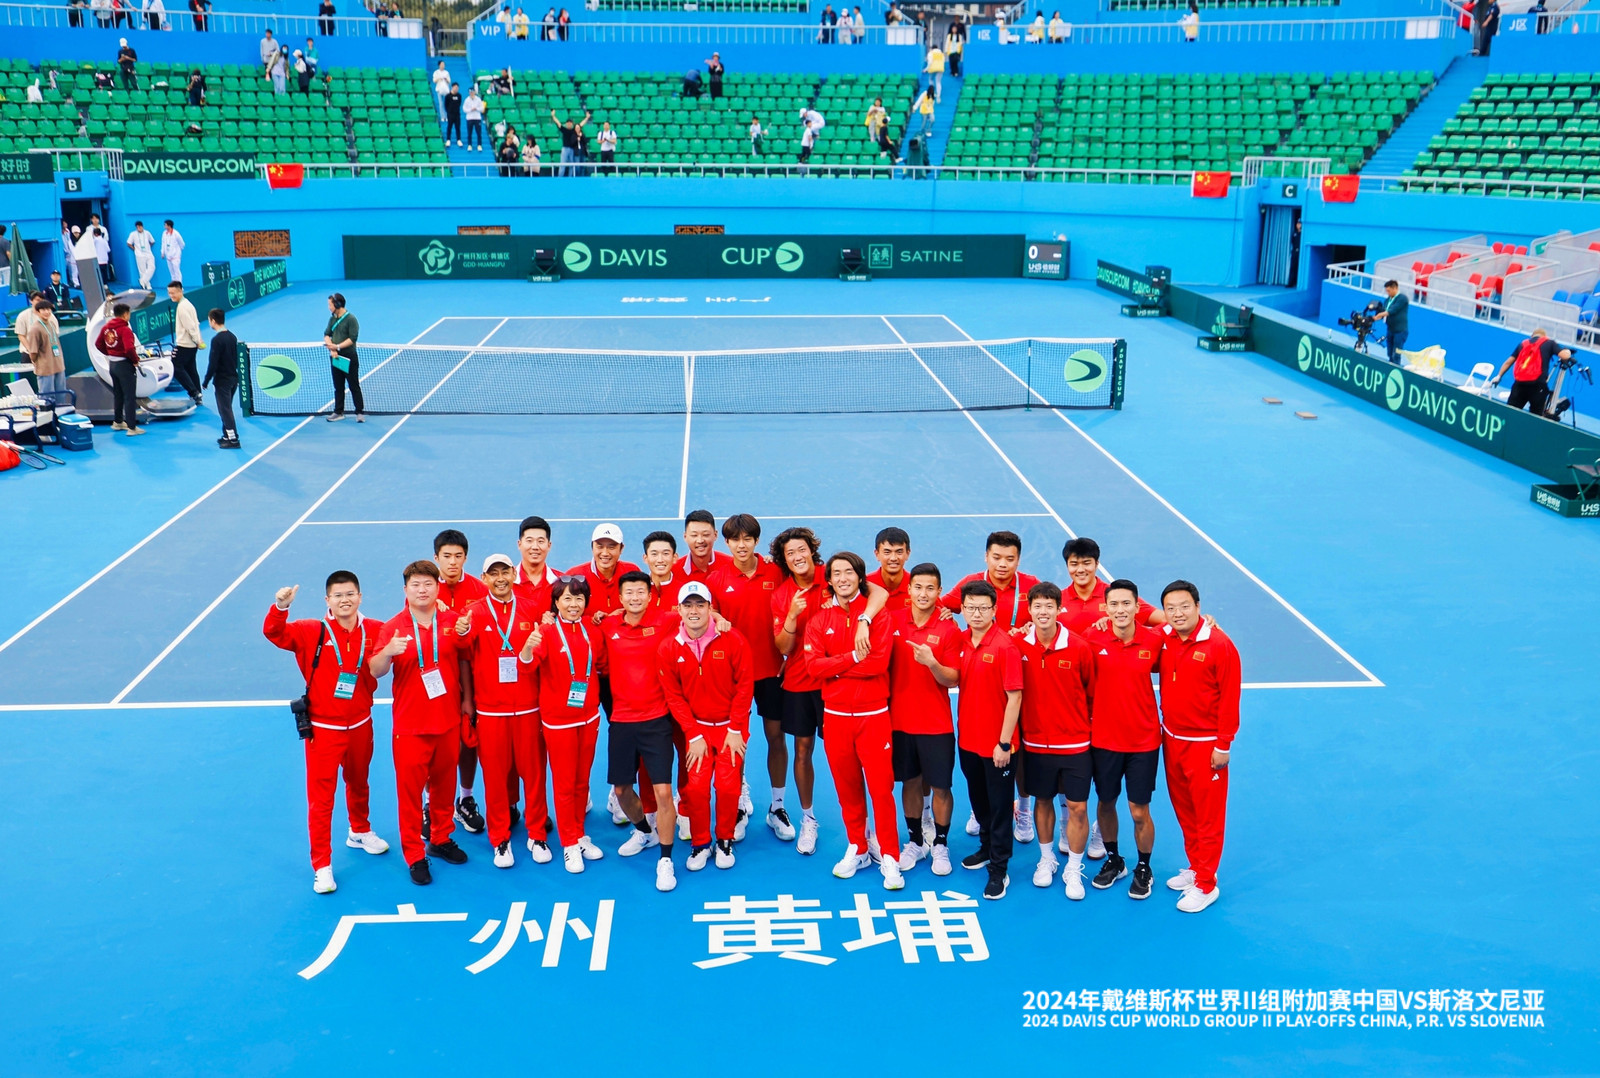 祝贺中国男网进军9月戴维斯杯世界二组比赛！